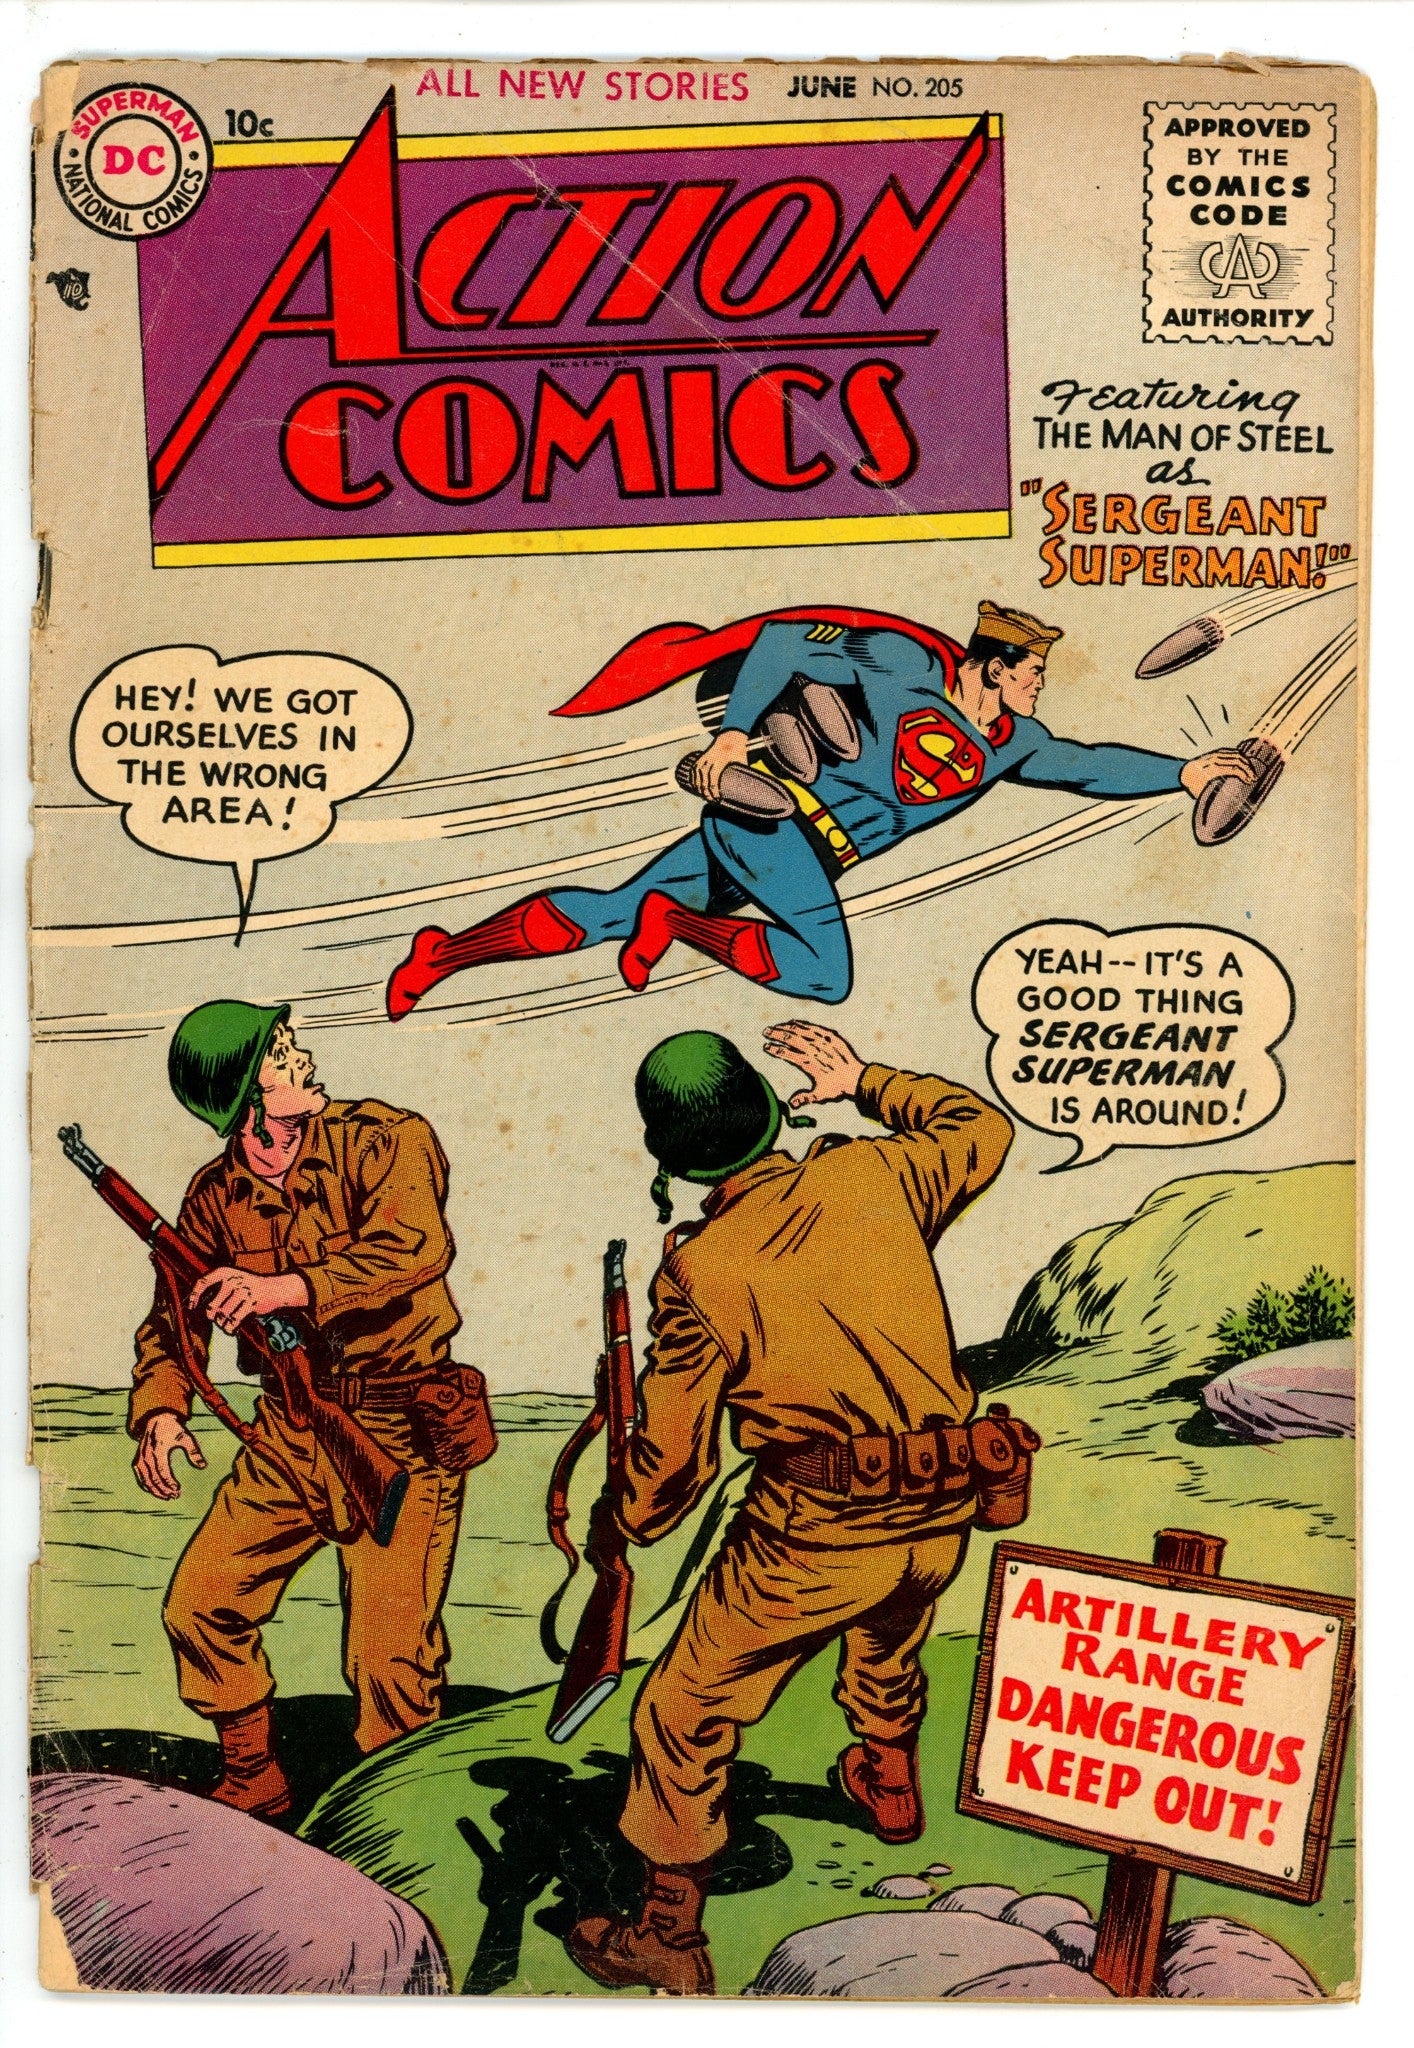 Action Comics Vol 1 205 FR/GD